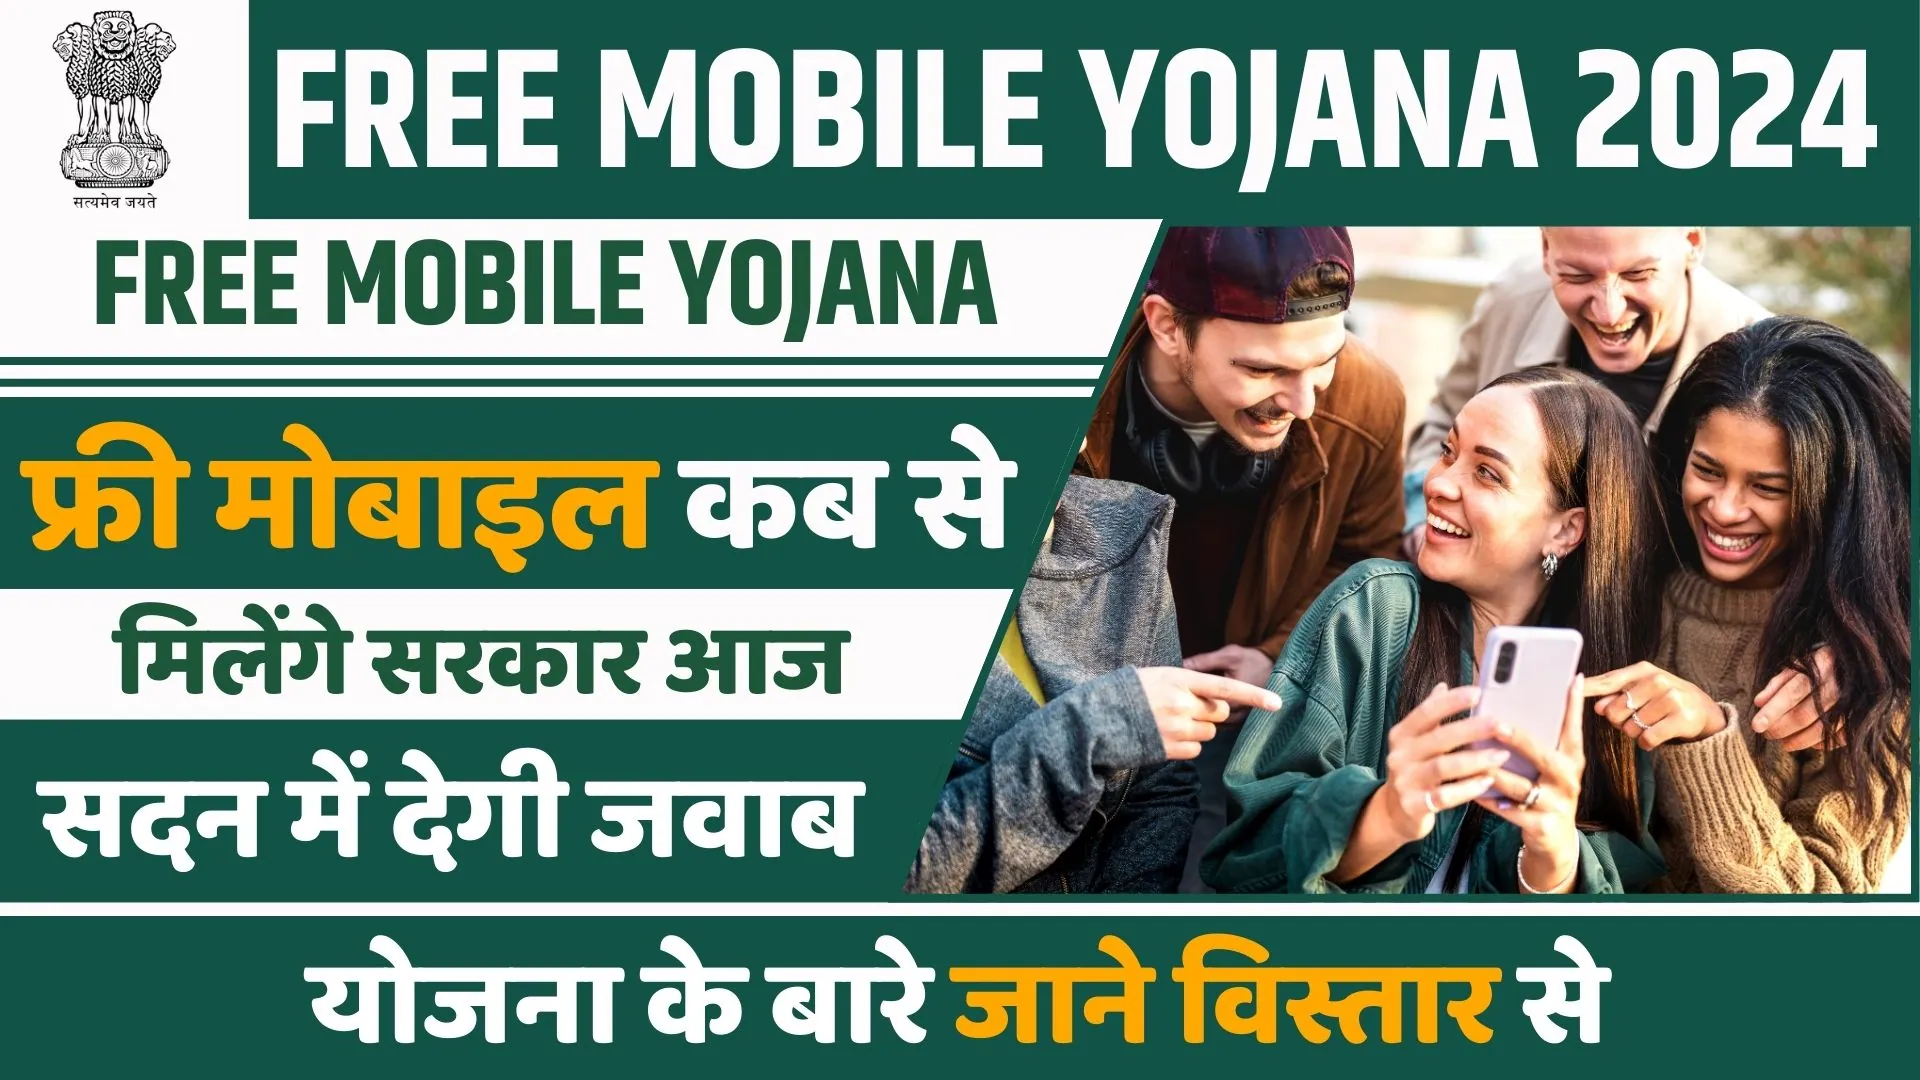 Free Mobile Yojana 2024: सरकार सभी छात्राओं और महिलाओं को दे रही है मुफ्त स्मार्टफोन, यहां जानें पूरी जानकारी!